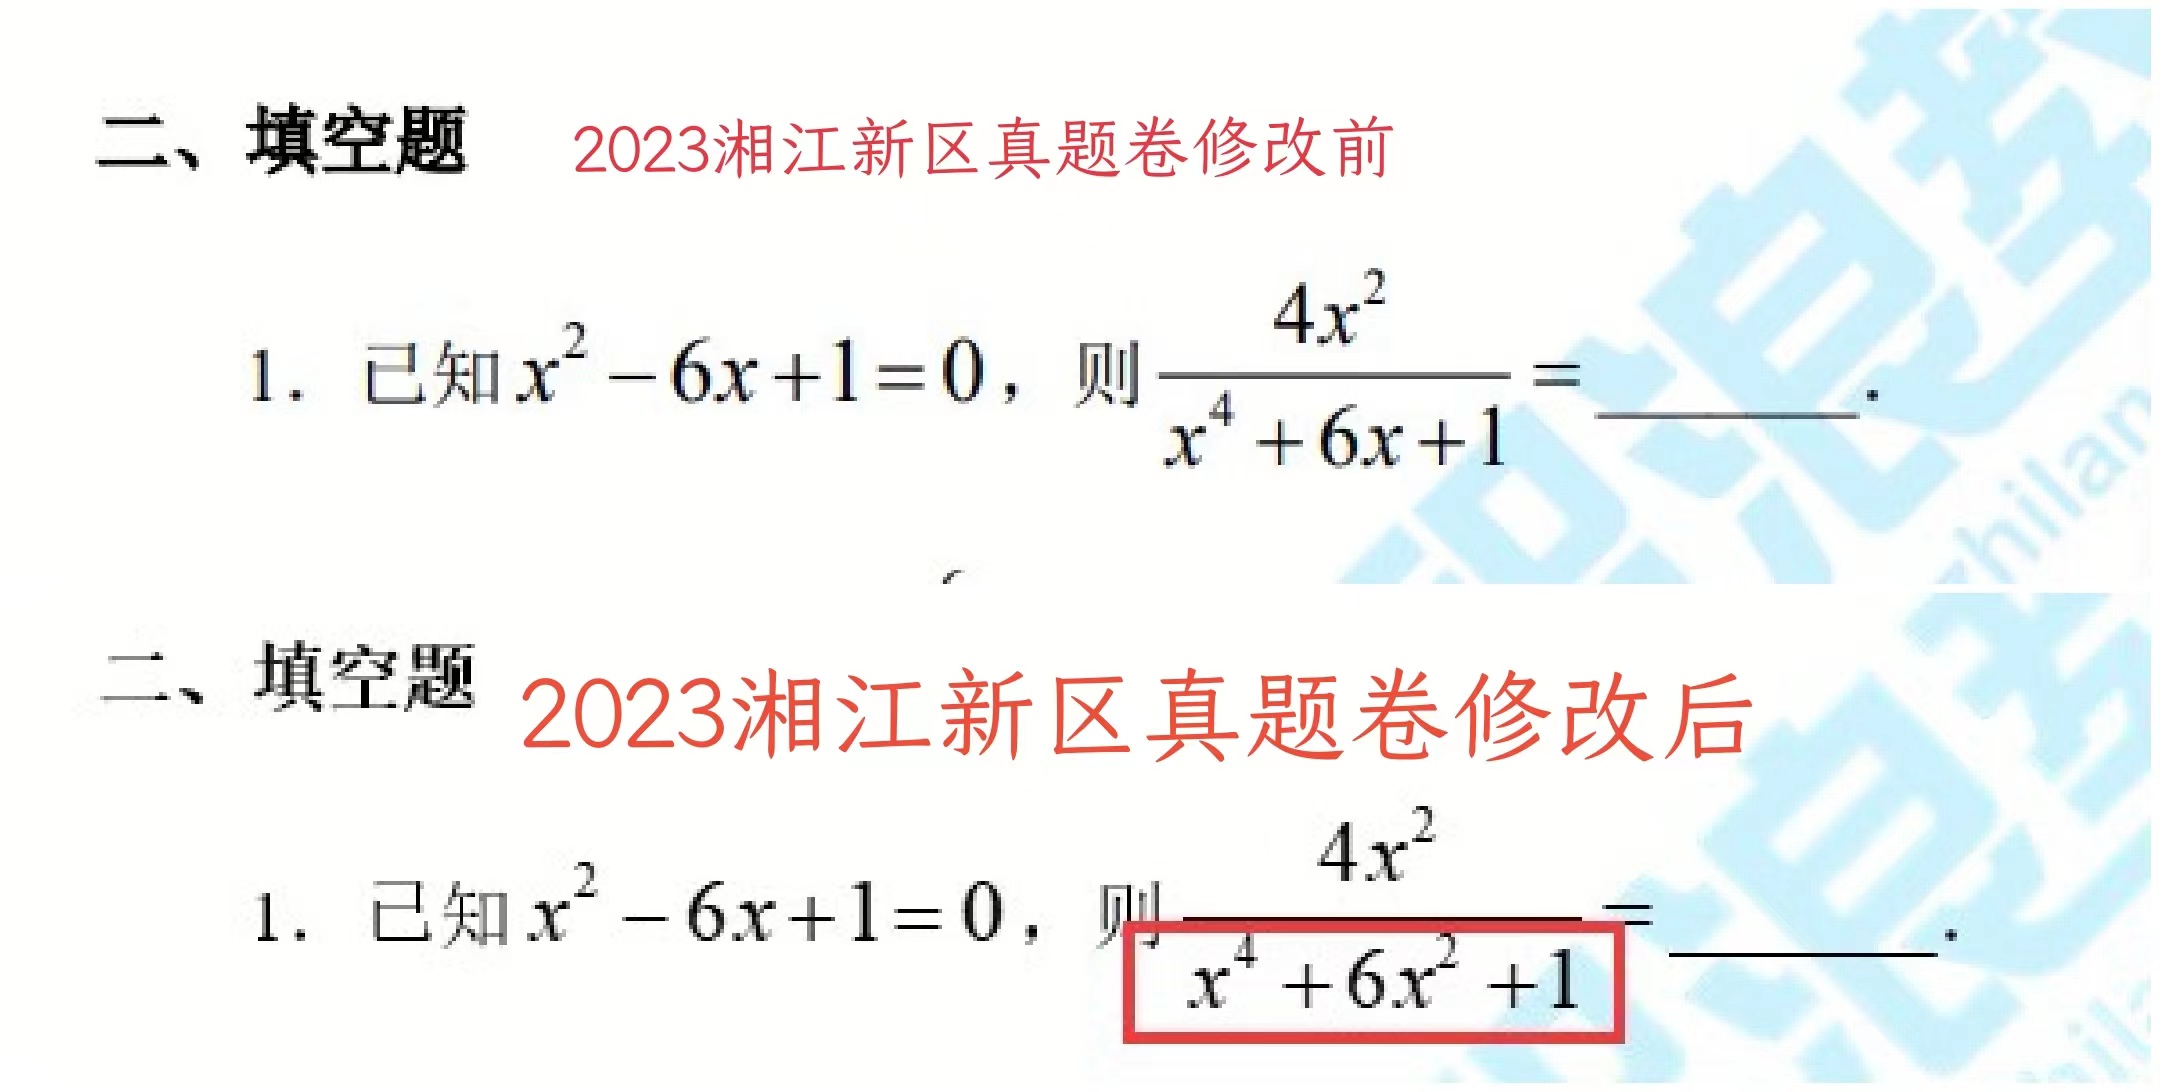 2023湘江新区填空题(1)(1).jpg